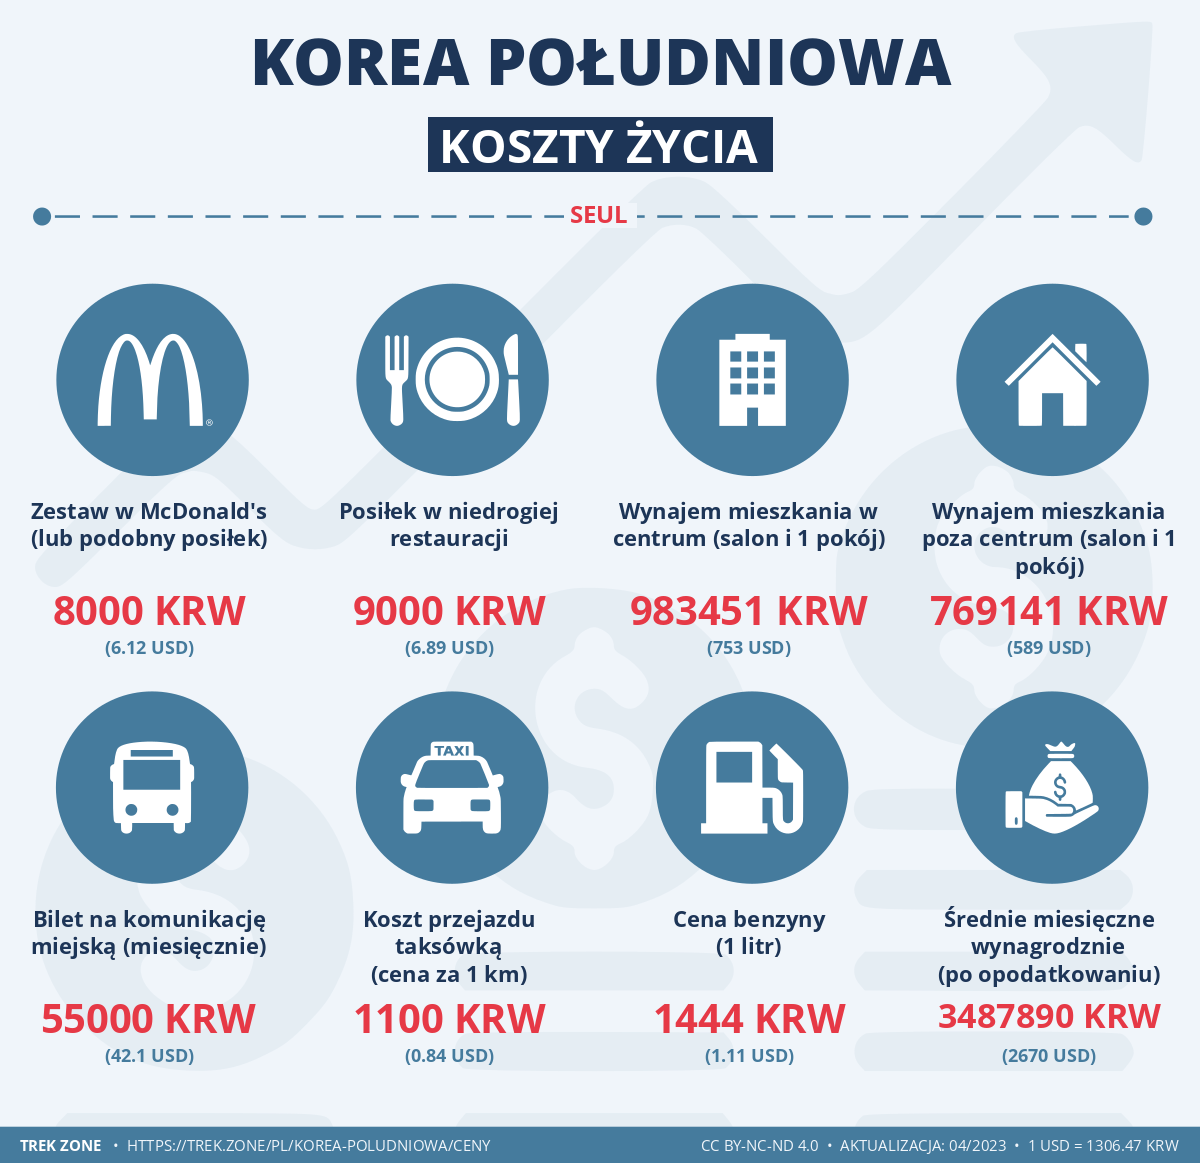 ceny i koszty zycia korea poludniowa